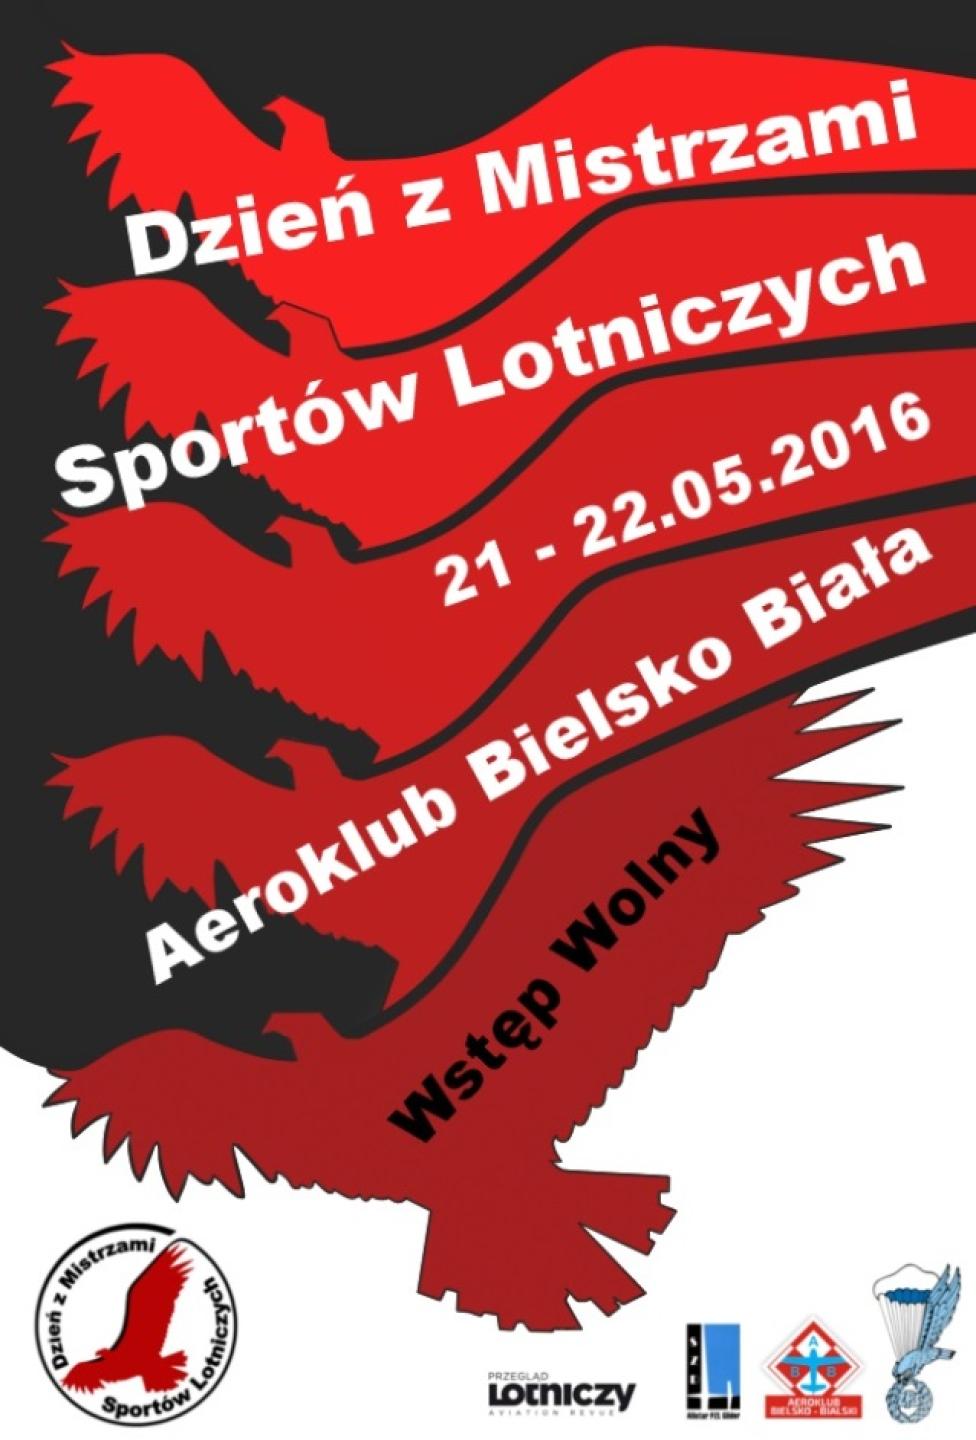 Dzień z Mistrzami Sportów Lotniczych w Bielsku-Białej